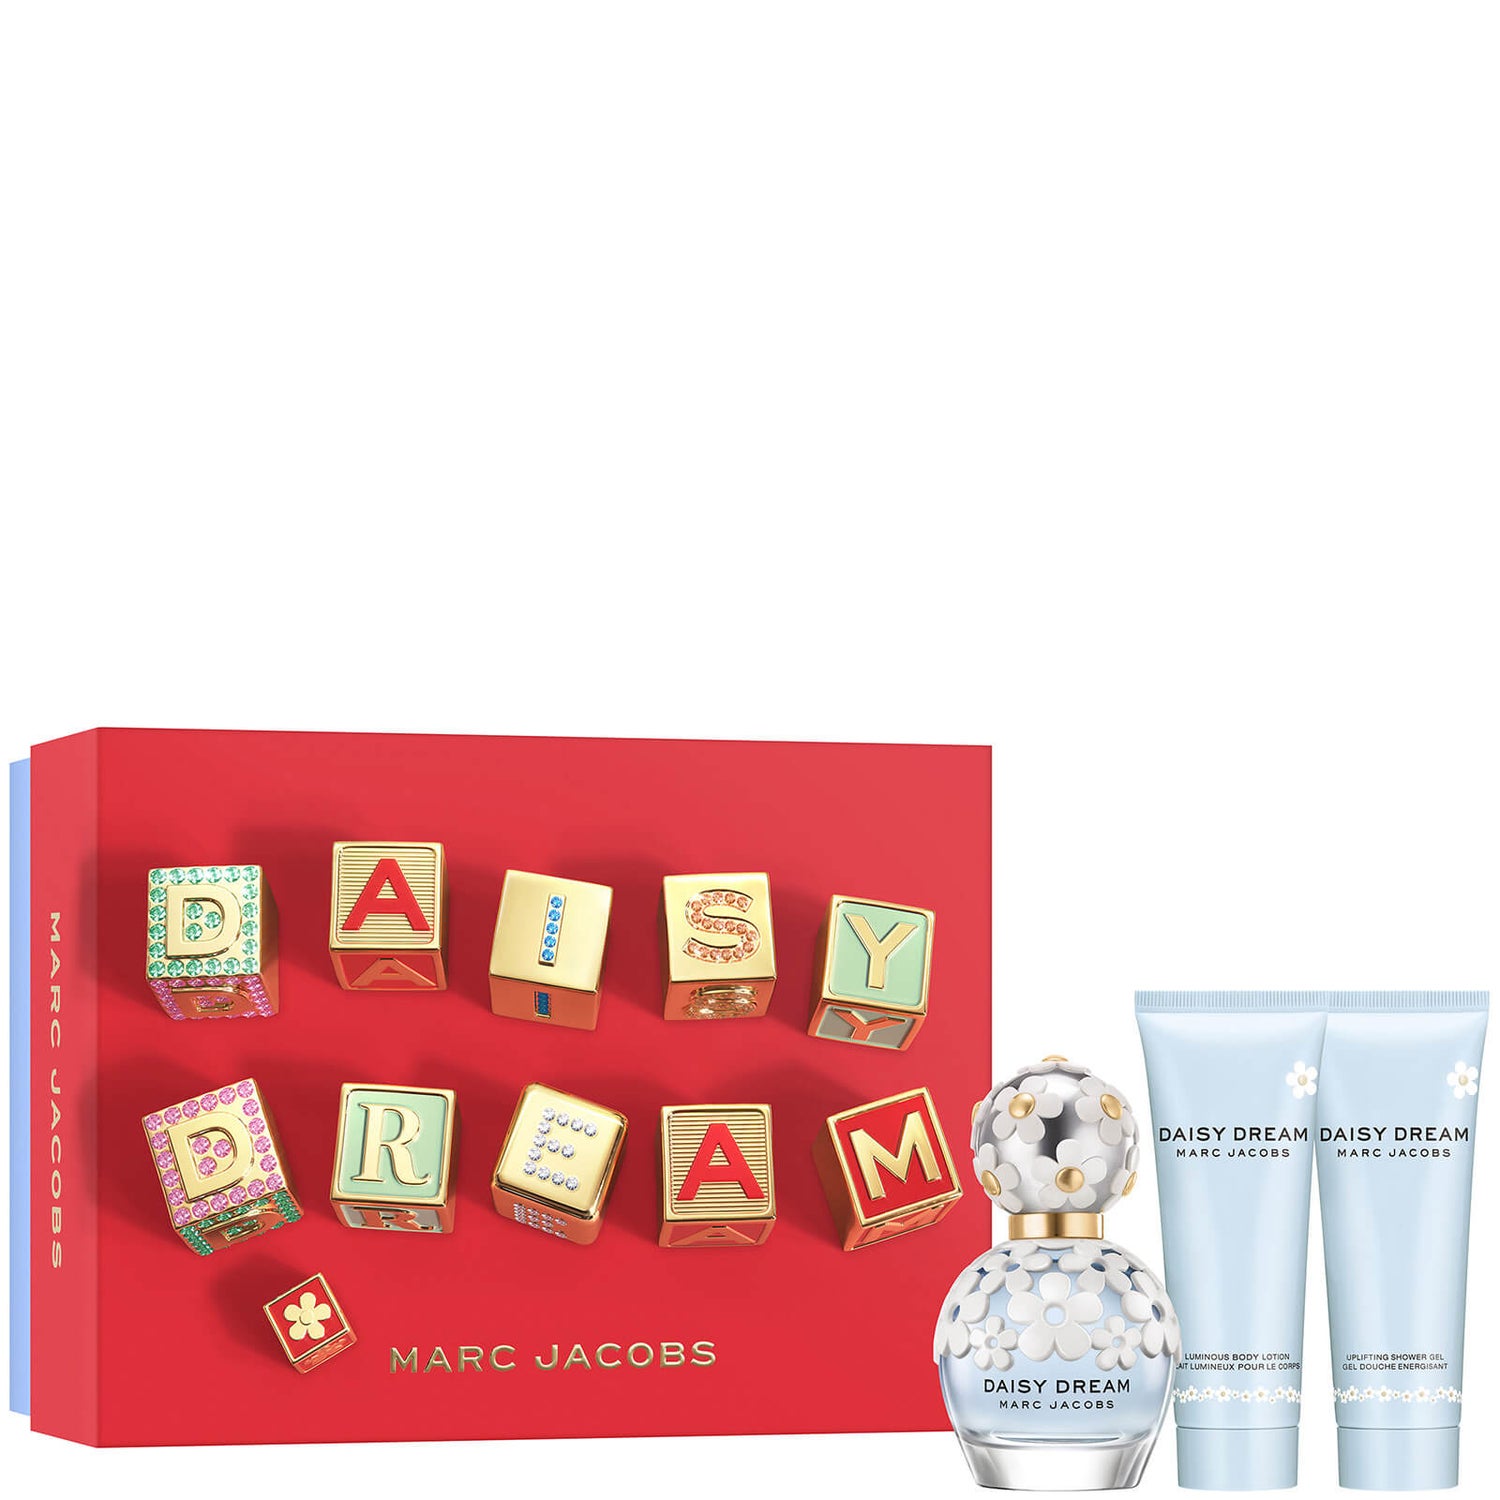 Marc Jacobs Dream Eau de Toilette 50ml Gift Set (Worth £94.00)